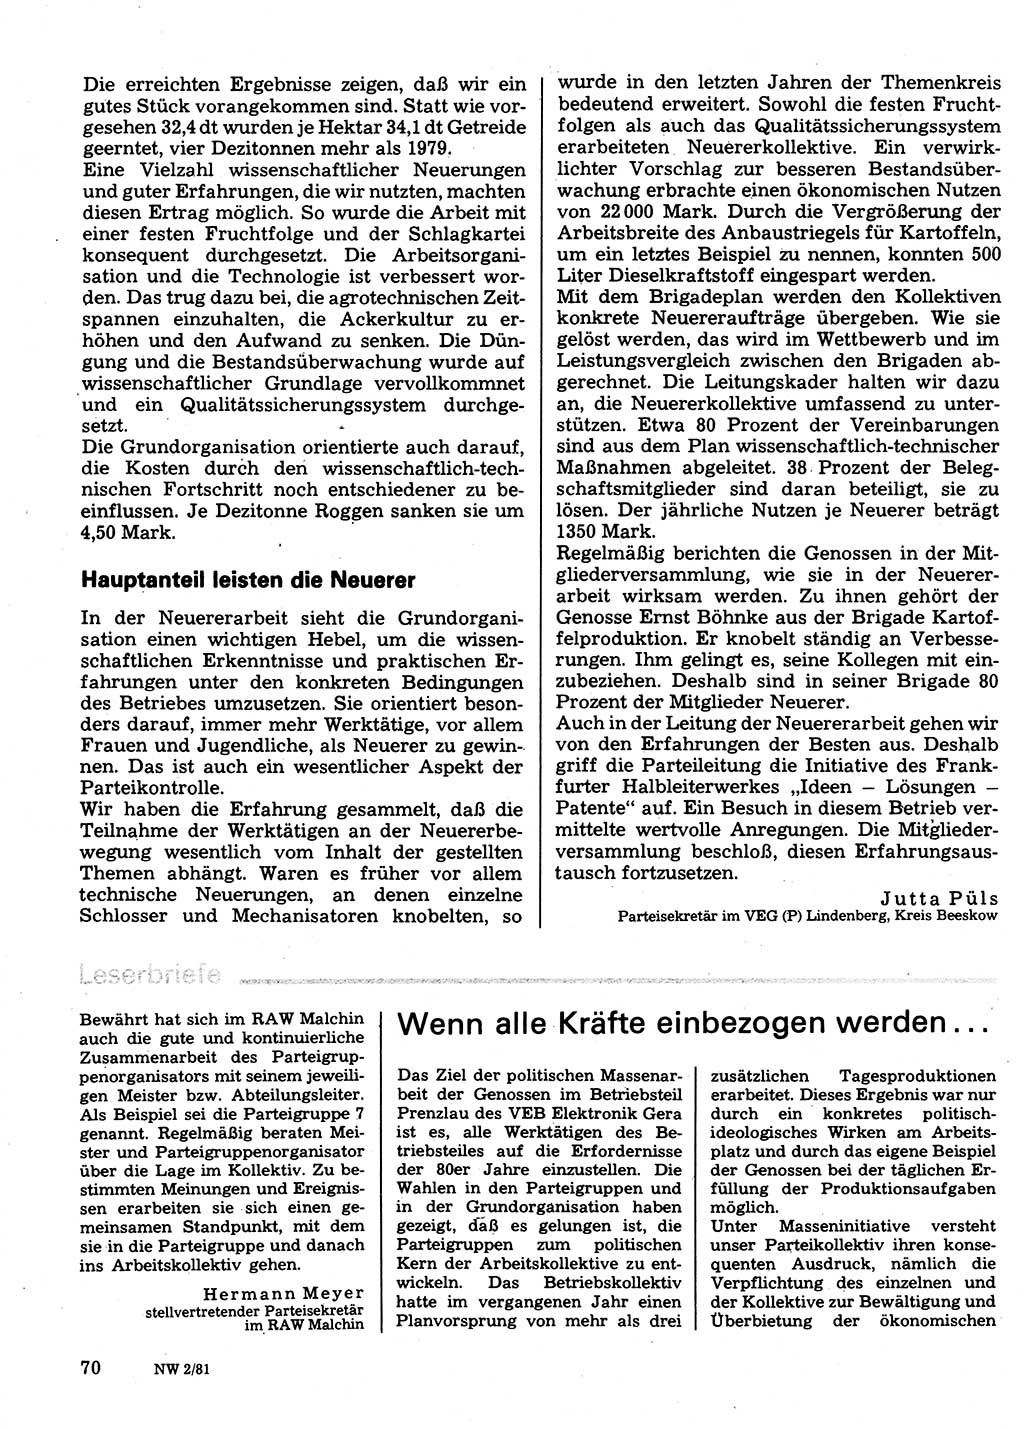 Neuer Weg (NW), Organ des Zentralkomitees (ZK) der SED (Sozialistische Einheitspartei Deutschlands) für Fragen des Parteilebens, 36. Jahrgang [Deutsche Demokratische Republik (DDR)] 1981, Seite 70 (NW ZK SED DDR 1981, S. 70)